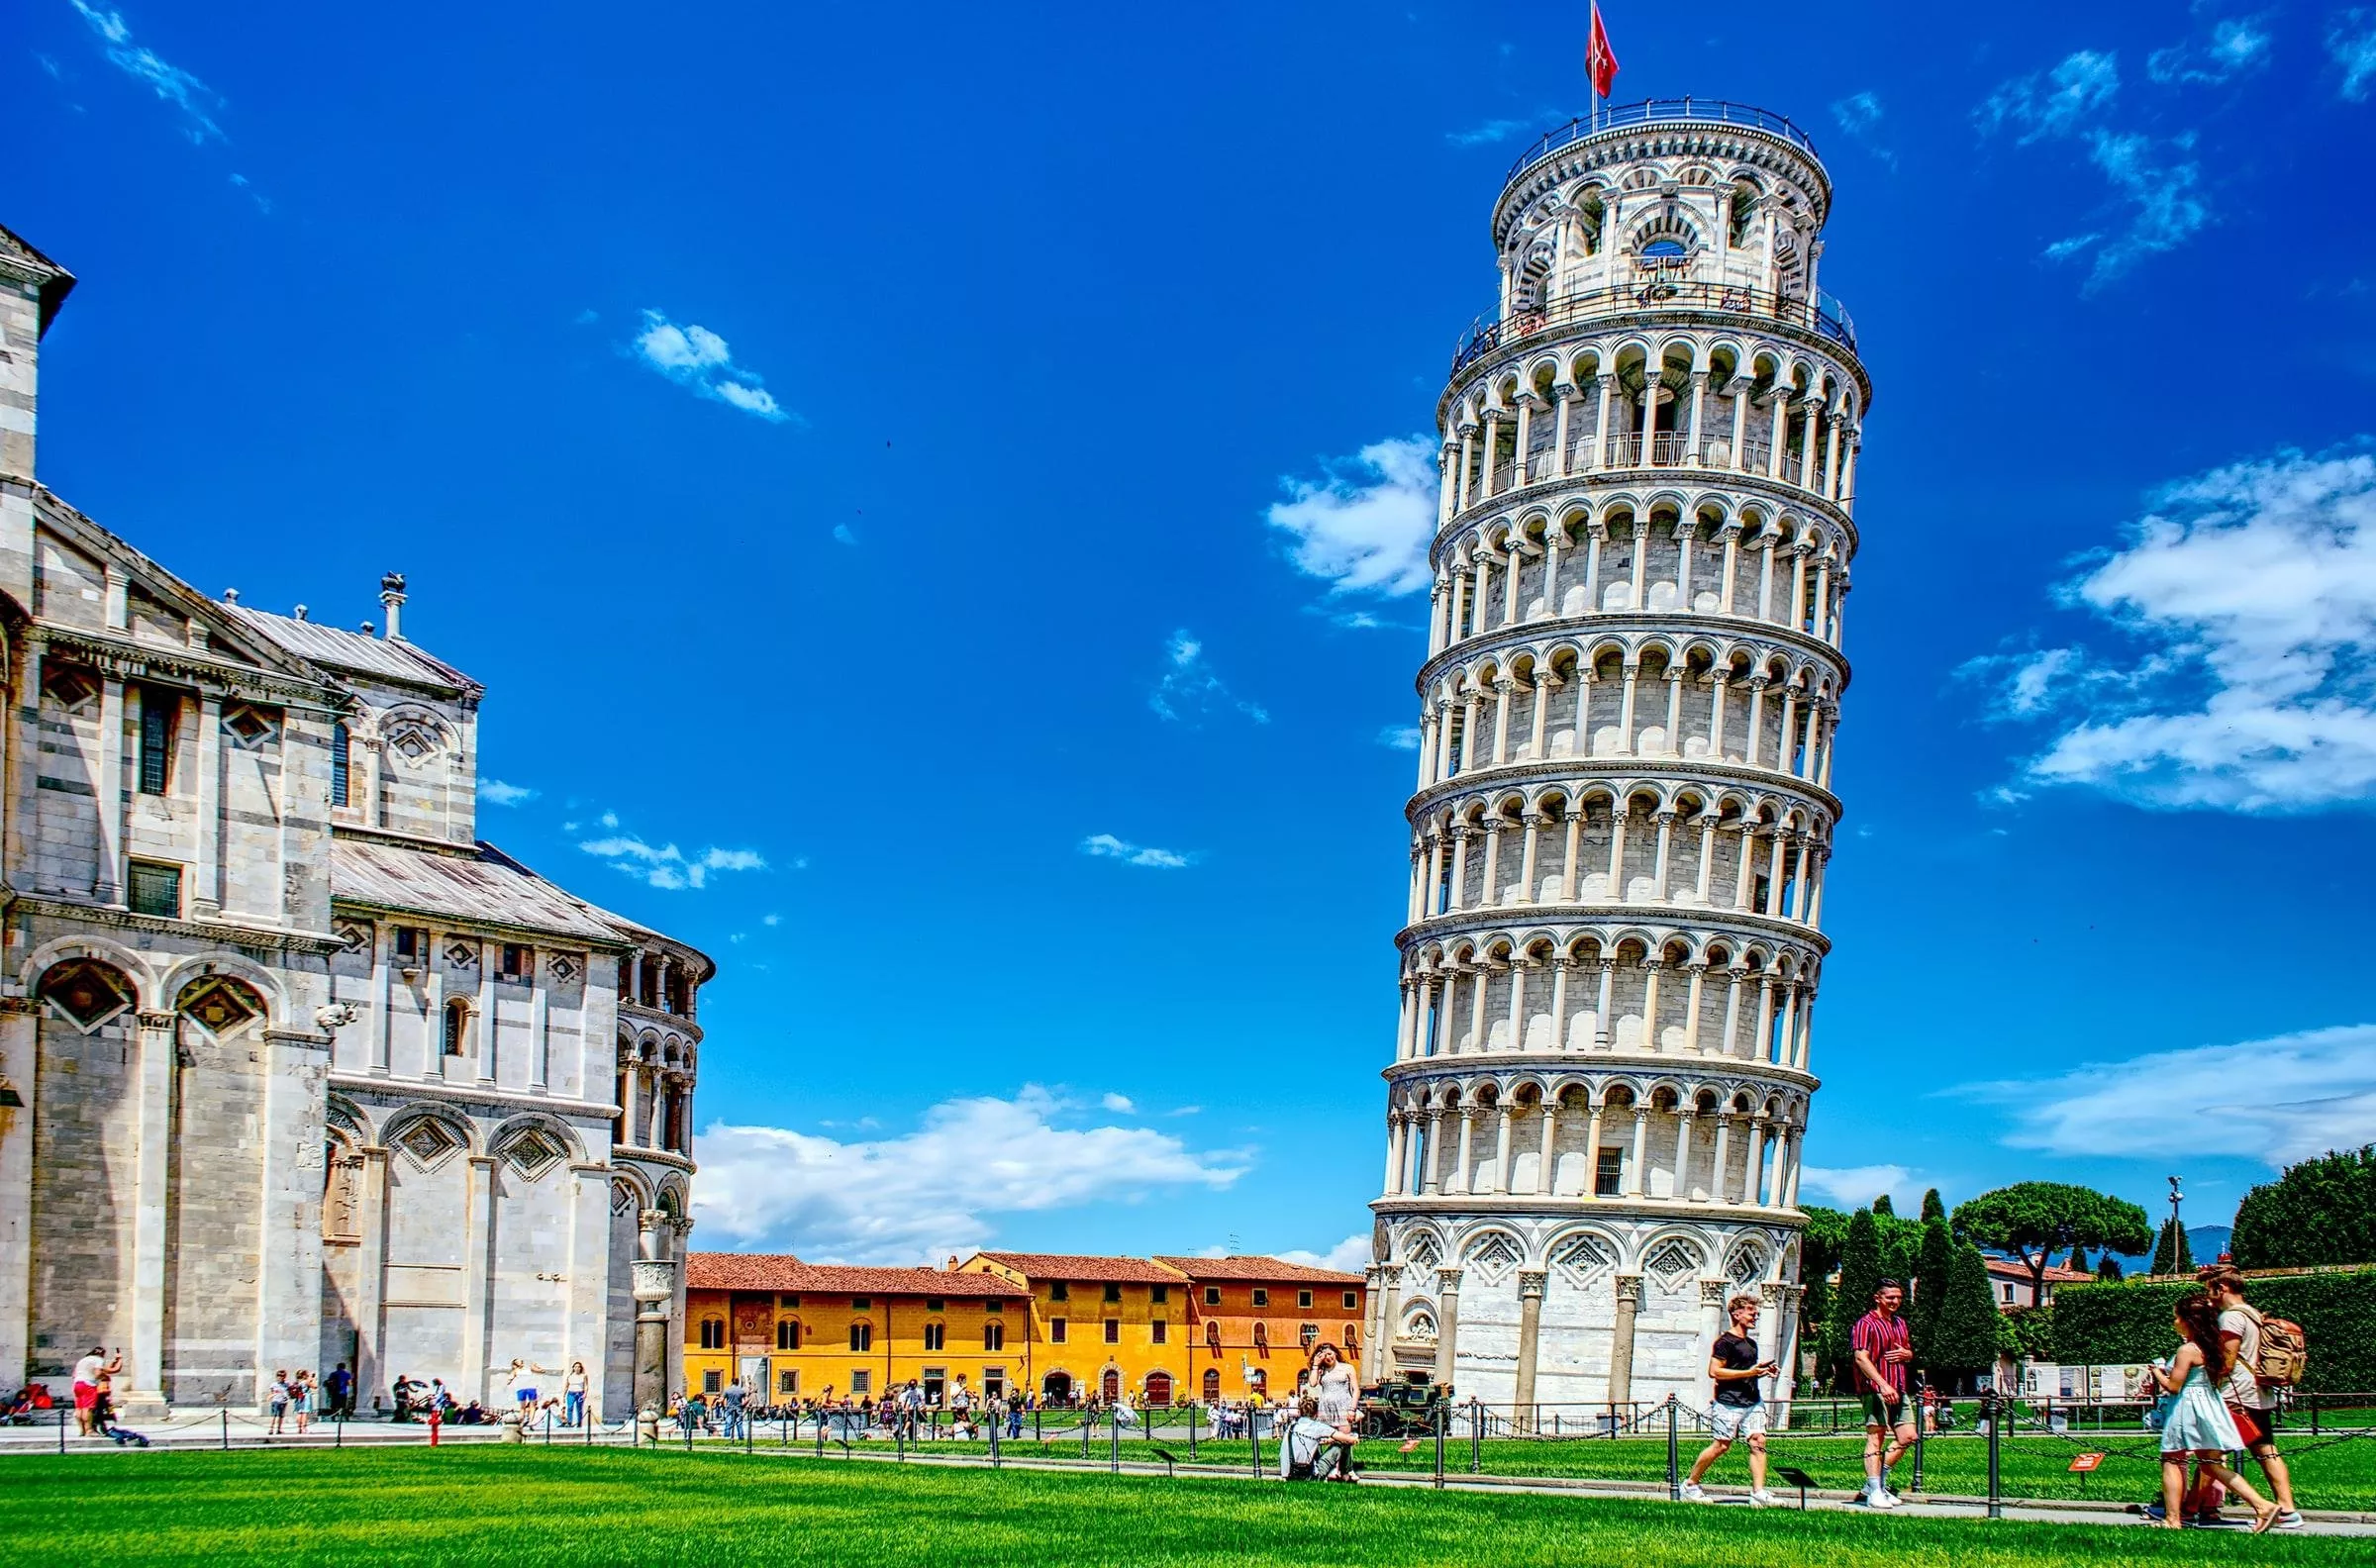 ما هي افضل الاماكن السياحية في ايطاليا التي يمكن زيارتها؟